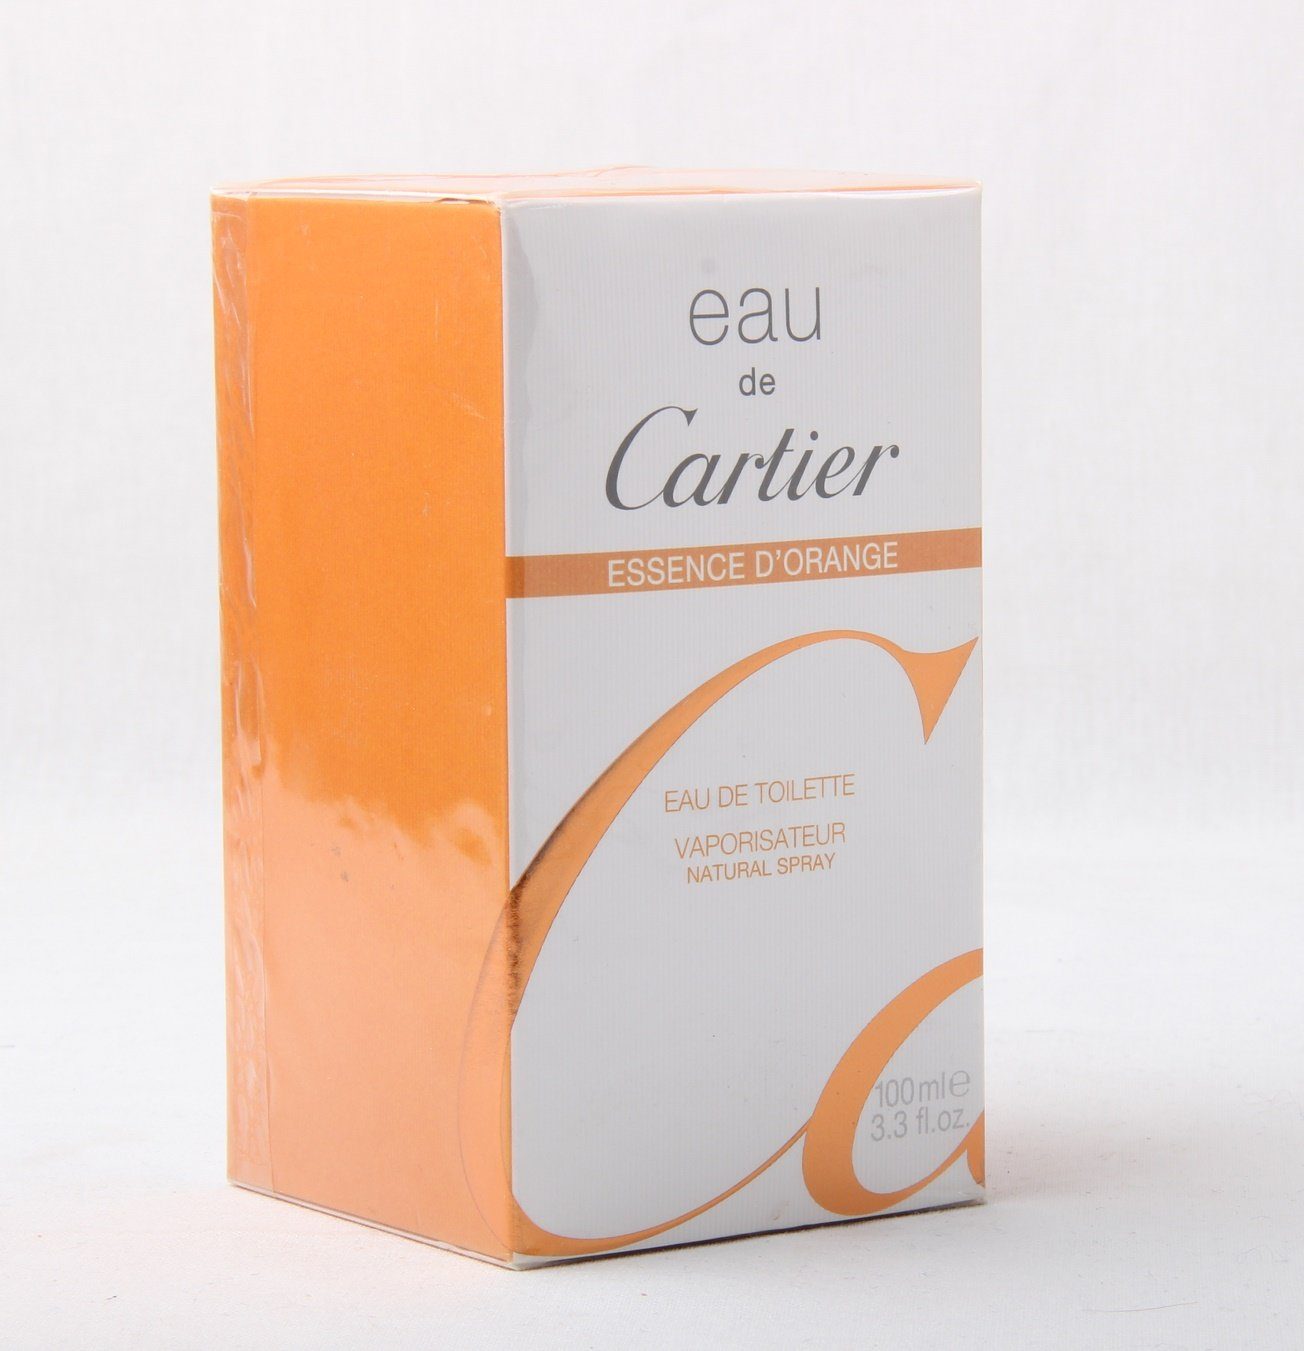 Cartier Eau de Toilette Eau Cartier Spray de 100ml Toilette Essence D'Orange Eau de